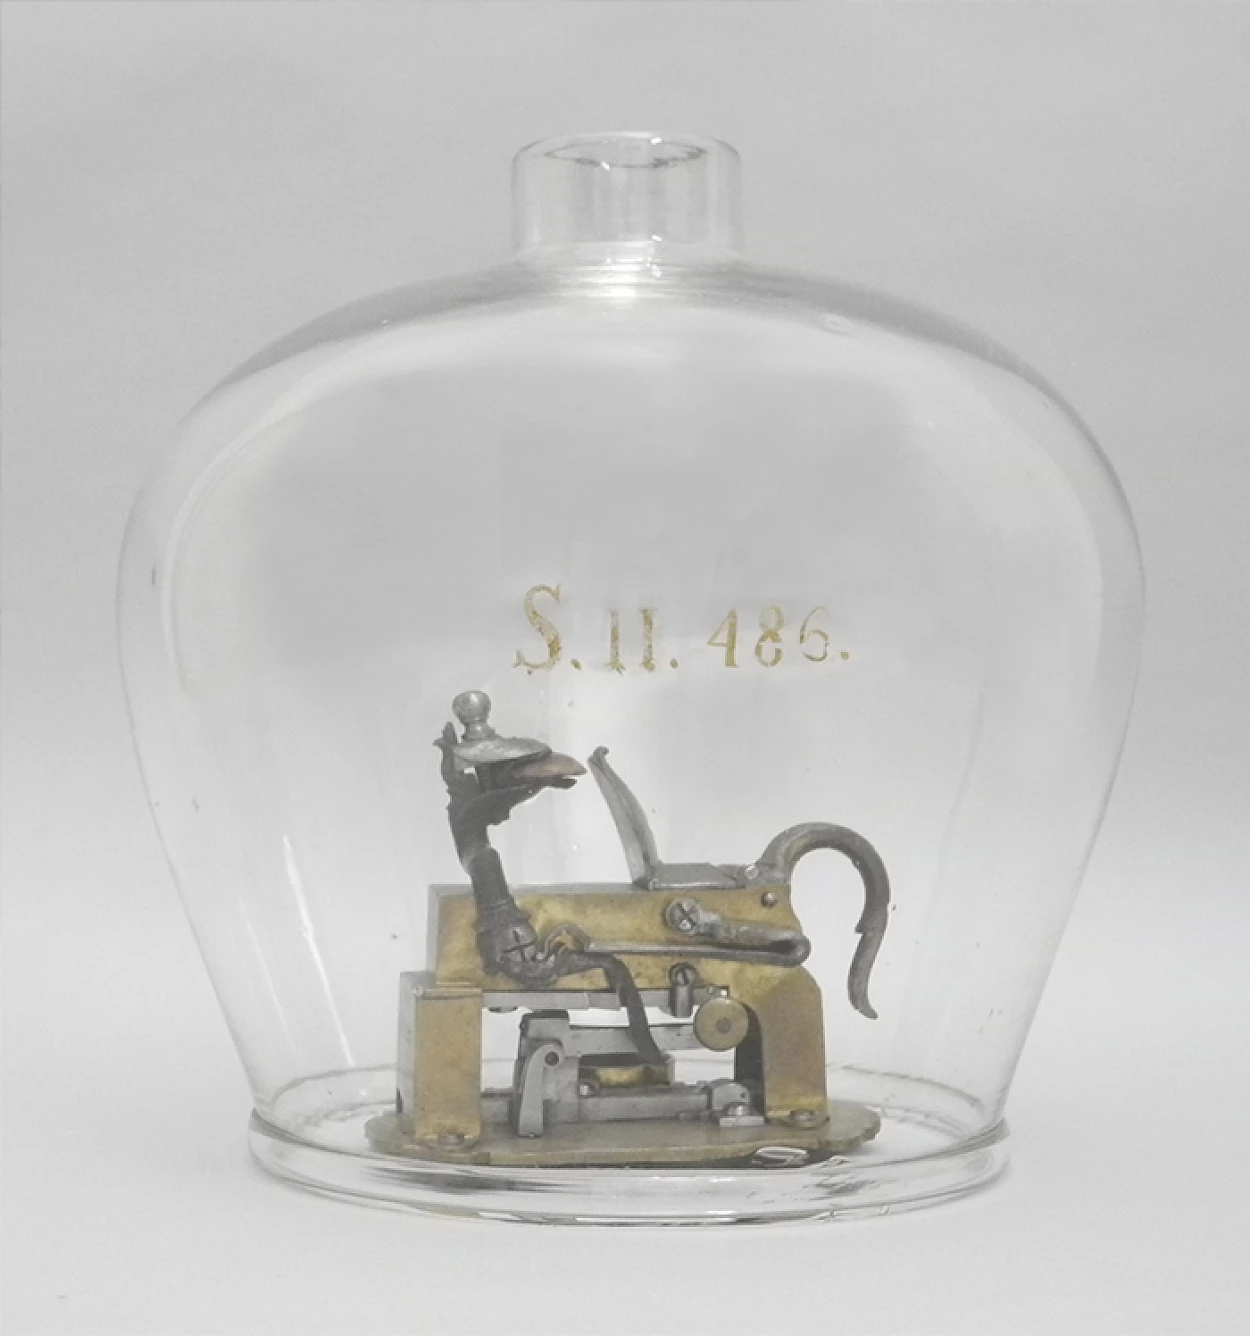 Fig. 2 - Disparador de pederneira no interior de uma campânula. No Index Instrumentorium esta campânula possui o número “S.II.486”. Este número encontra-se pintado a ouro na superfície de vidro. O número atual da campânula é o FIS.0511.